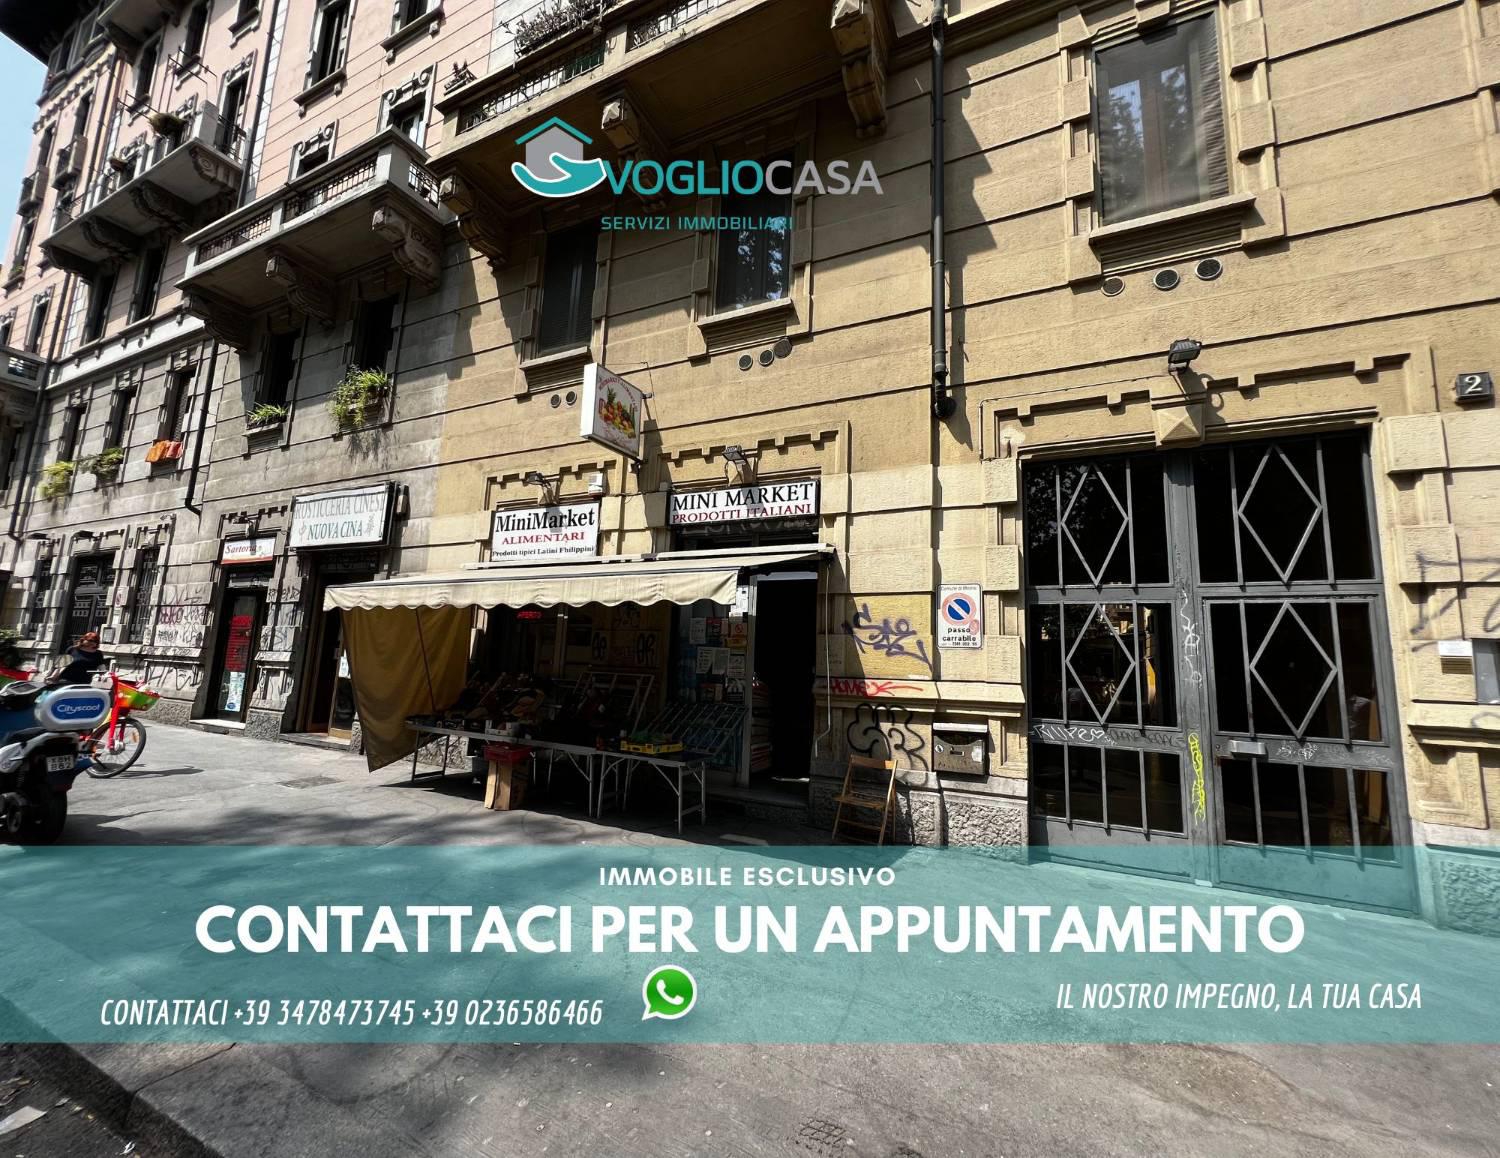 Negozio / Locale in vendita a Milano - Zona: 5 . Citta' Studi, Lambrate, Udine, Loreto, Piola, Ortica